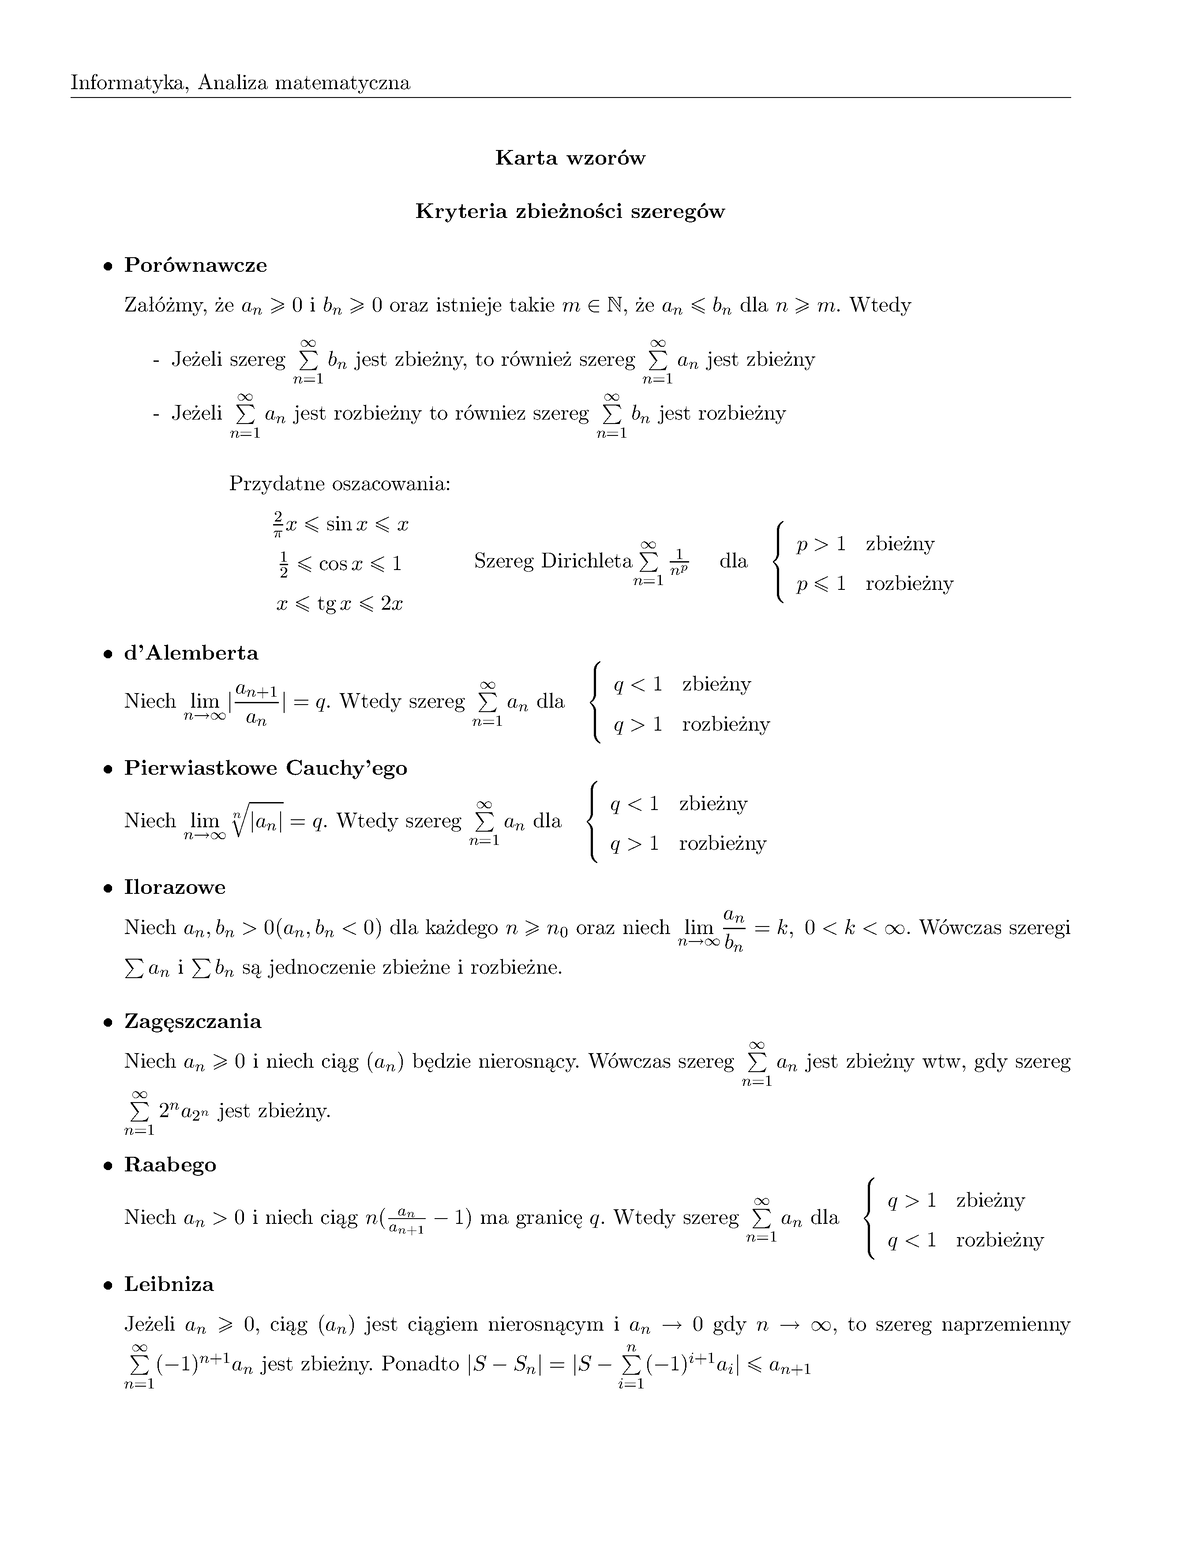 Karta Wzorów K1 Informatyka Analiza Matematyczna Karta Wzorów Kryteria Zbieżności Szeregów 9281